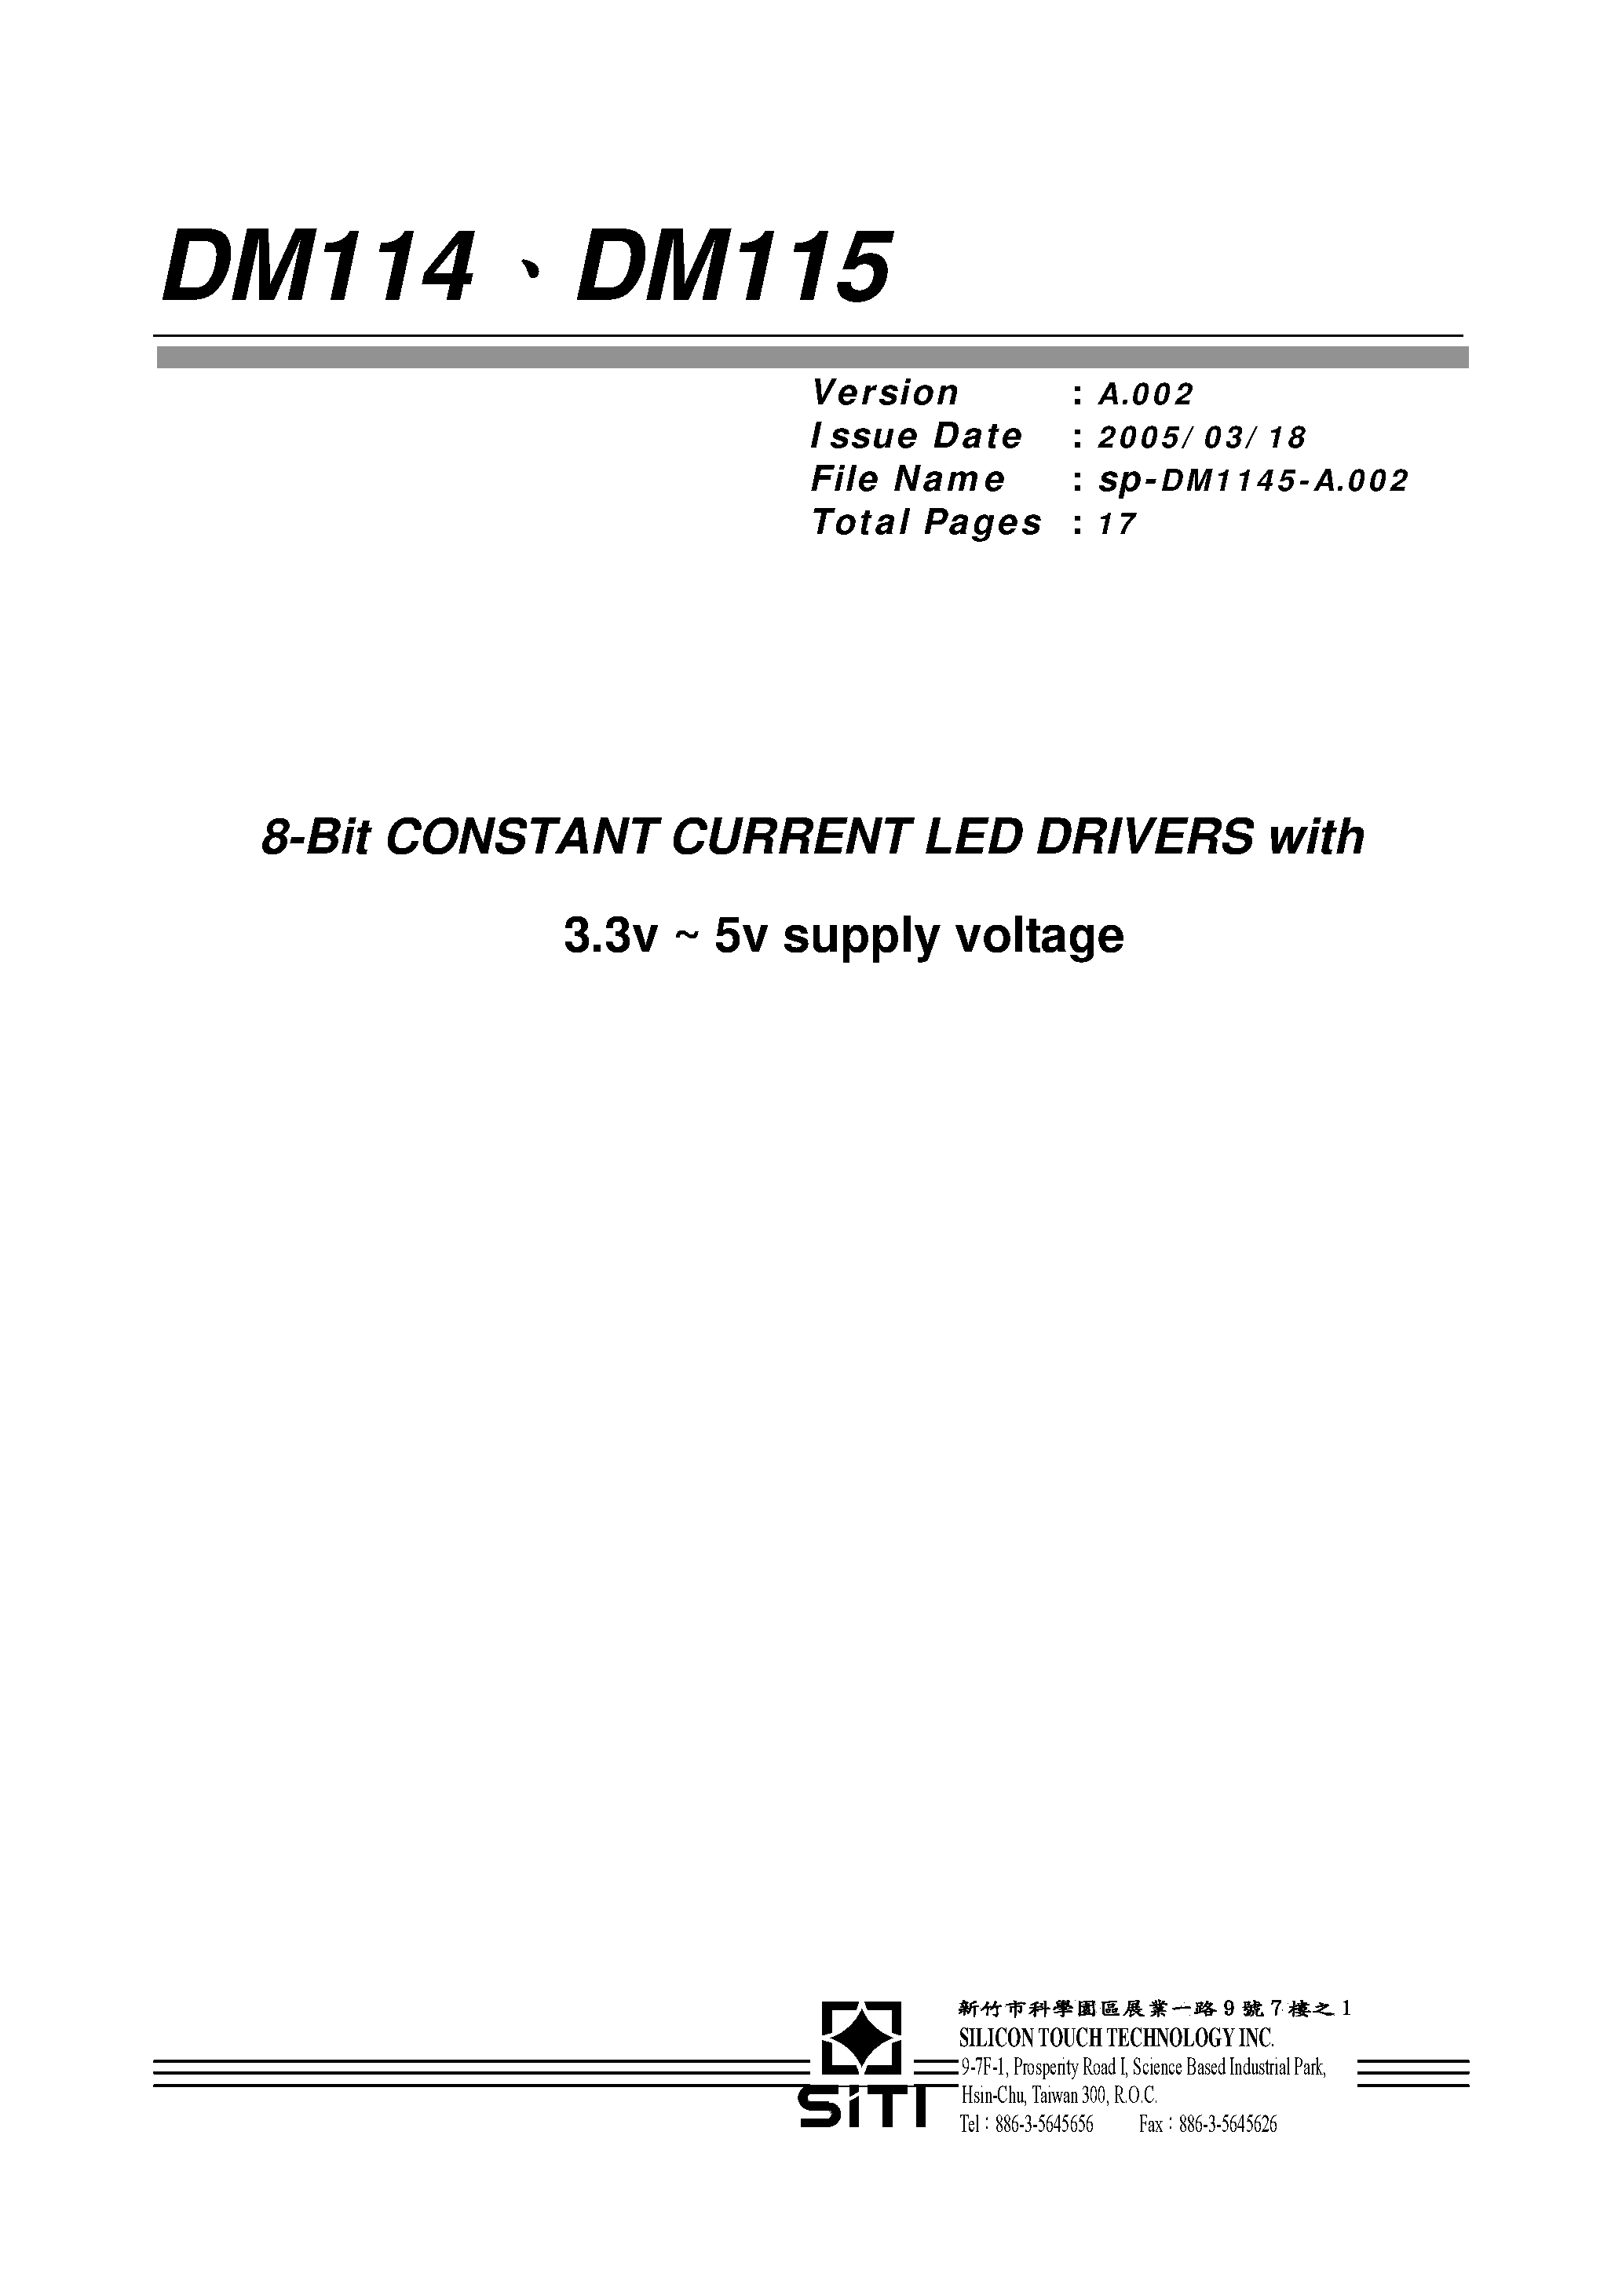 Datasheet DM114 - (DM114) 8-Bit Constant Current LED Drivers page 1